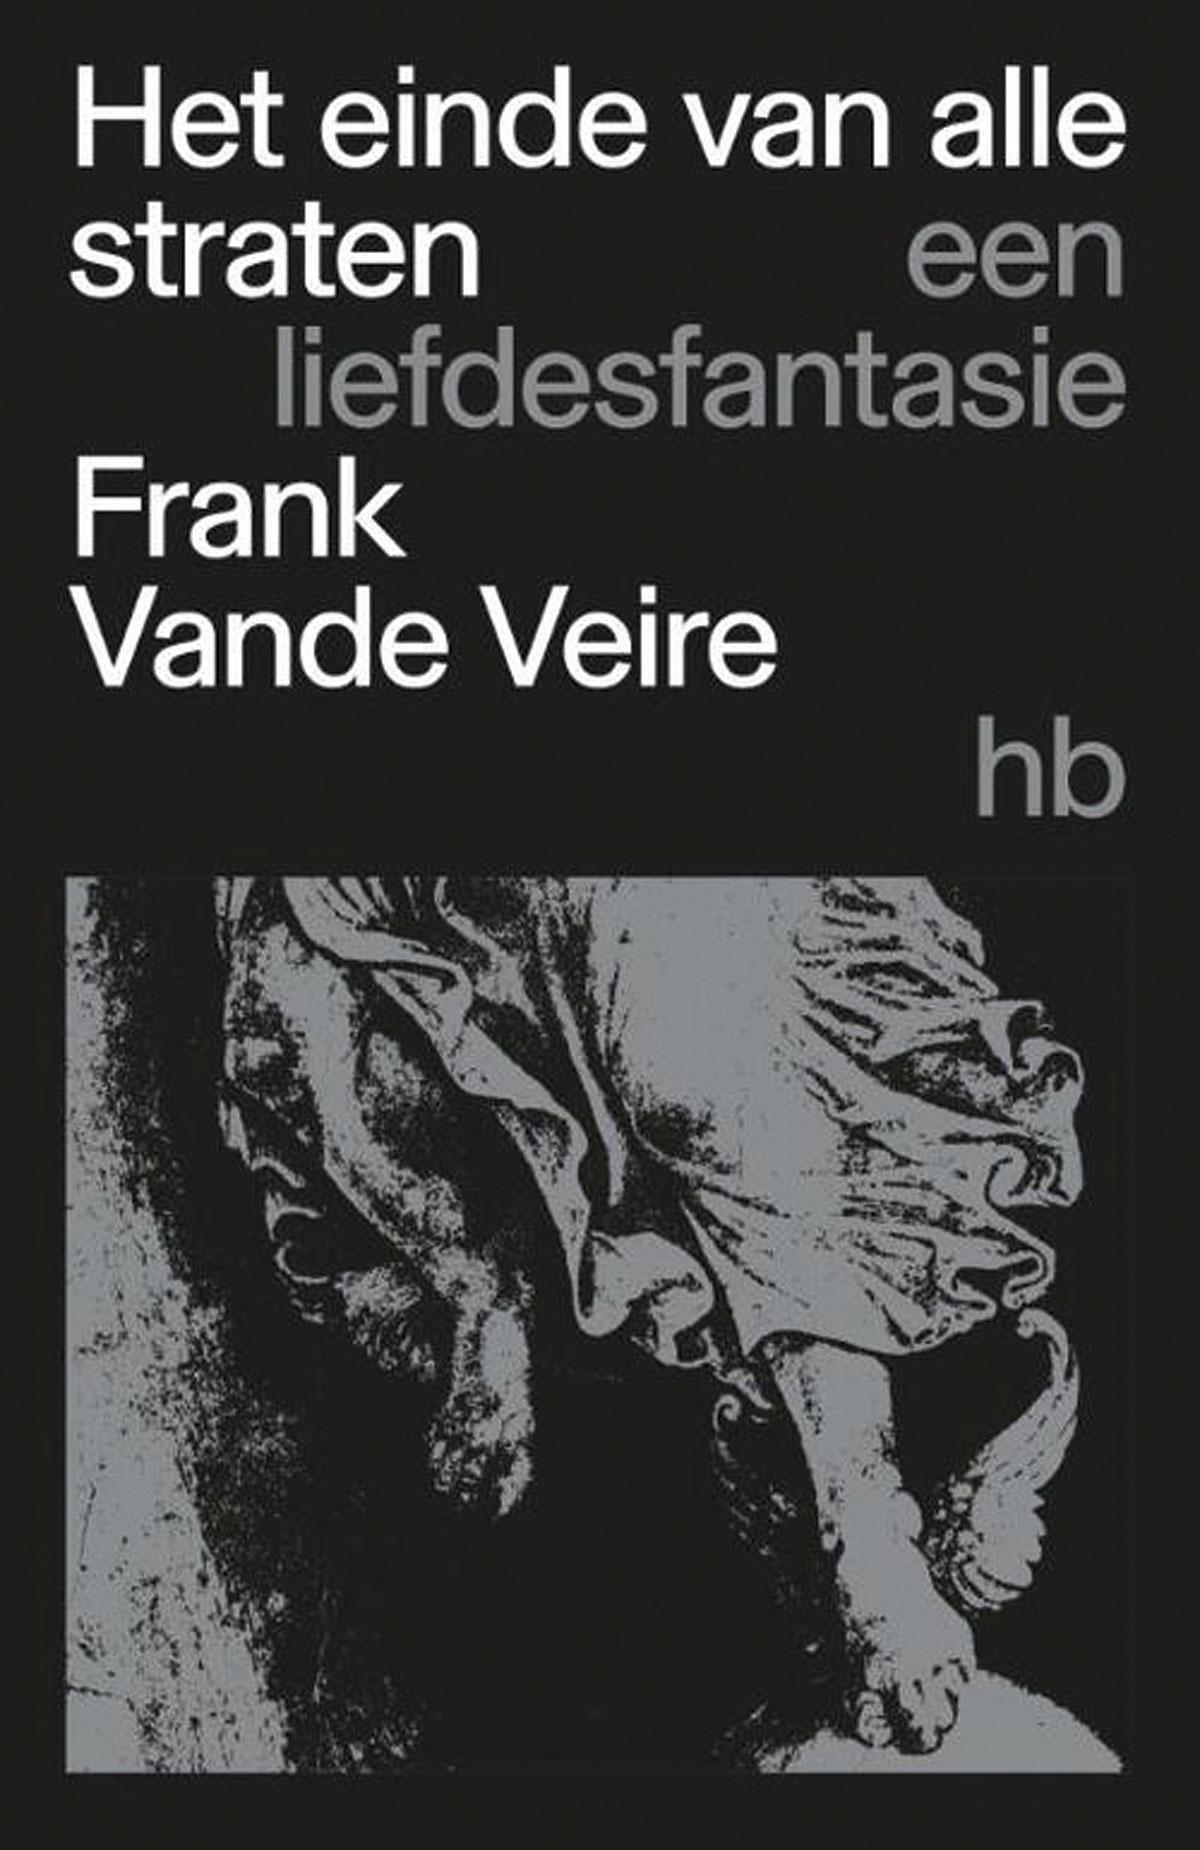 Frank Vande Veire, Het einde van alle straten. Een liefdesfantasie, Het Balanseer, 278 blz., 24,50 euro.